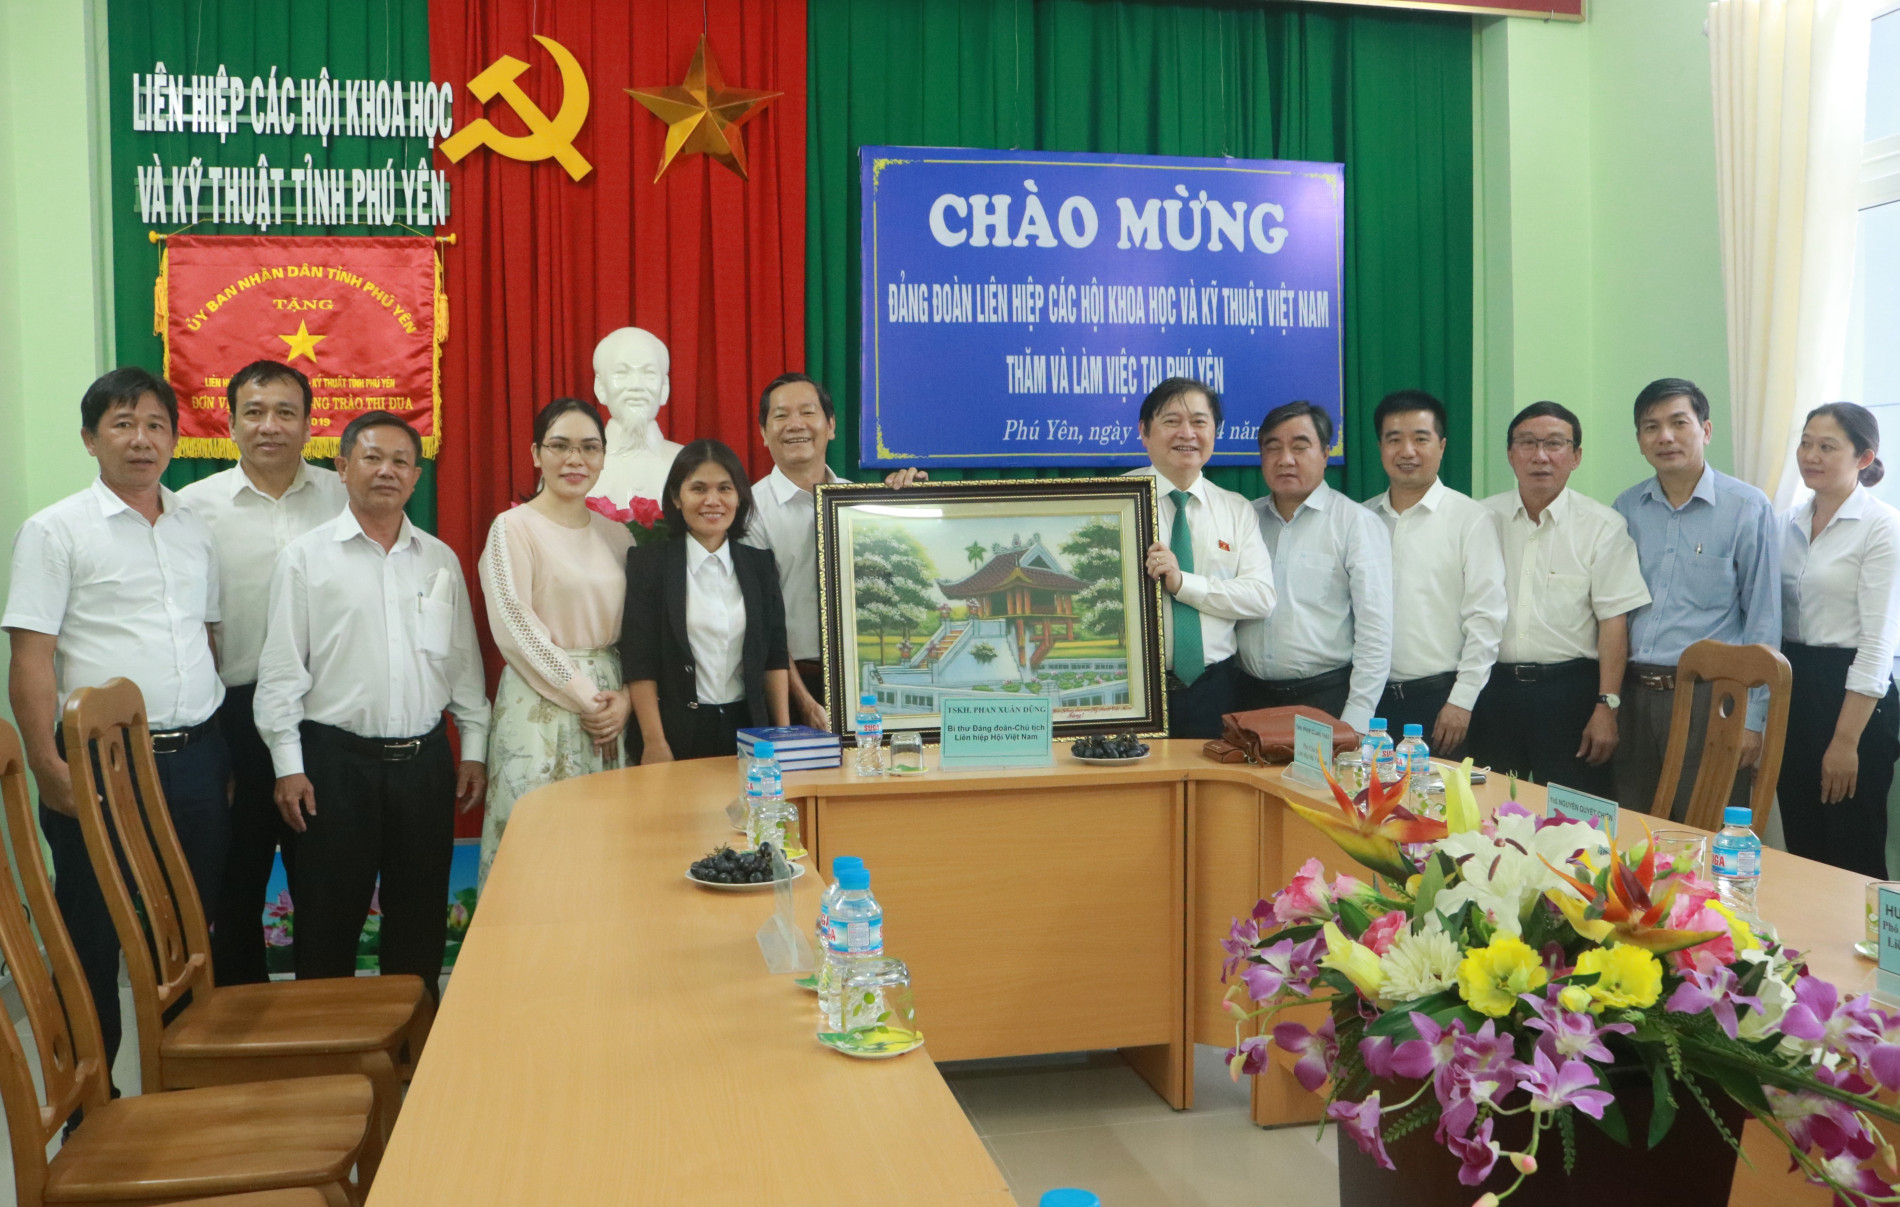 Bí thư Đảng đoàn, Chủ tịch Liên hiệp Hội Việt Nam Phan Xuân Dũng tặng quà lưu niệm cho Liên hiệp Hội Phú Yên.  